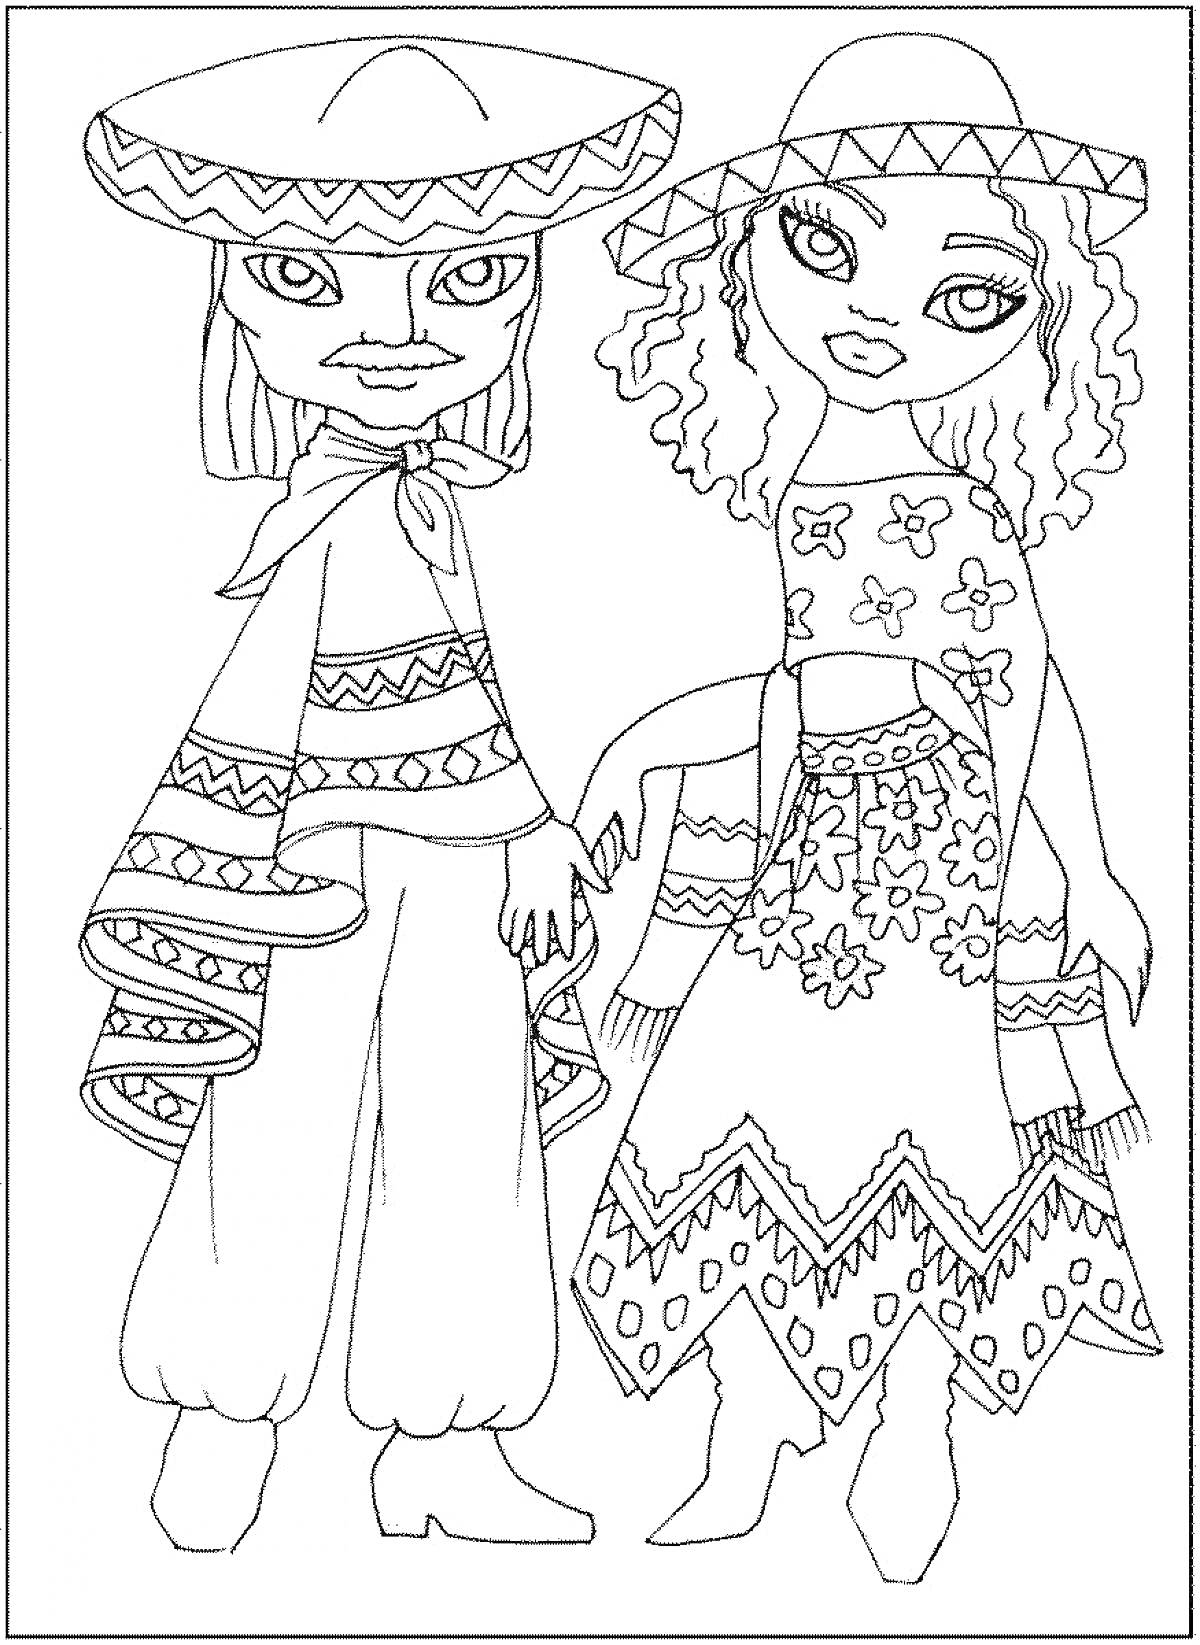 Раскраска Дети в традиционных мексиканских костюмах с узорами, мальчик в сомбреро и пончо, девочка в платье с завязками